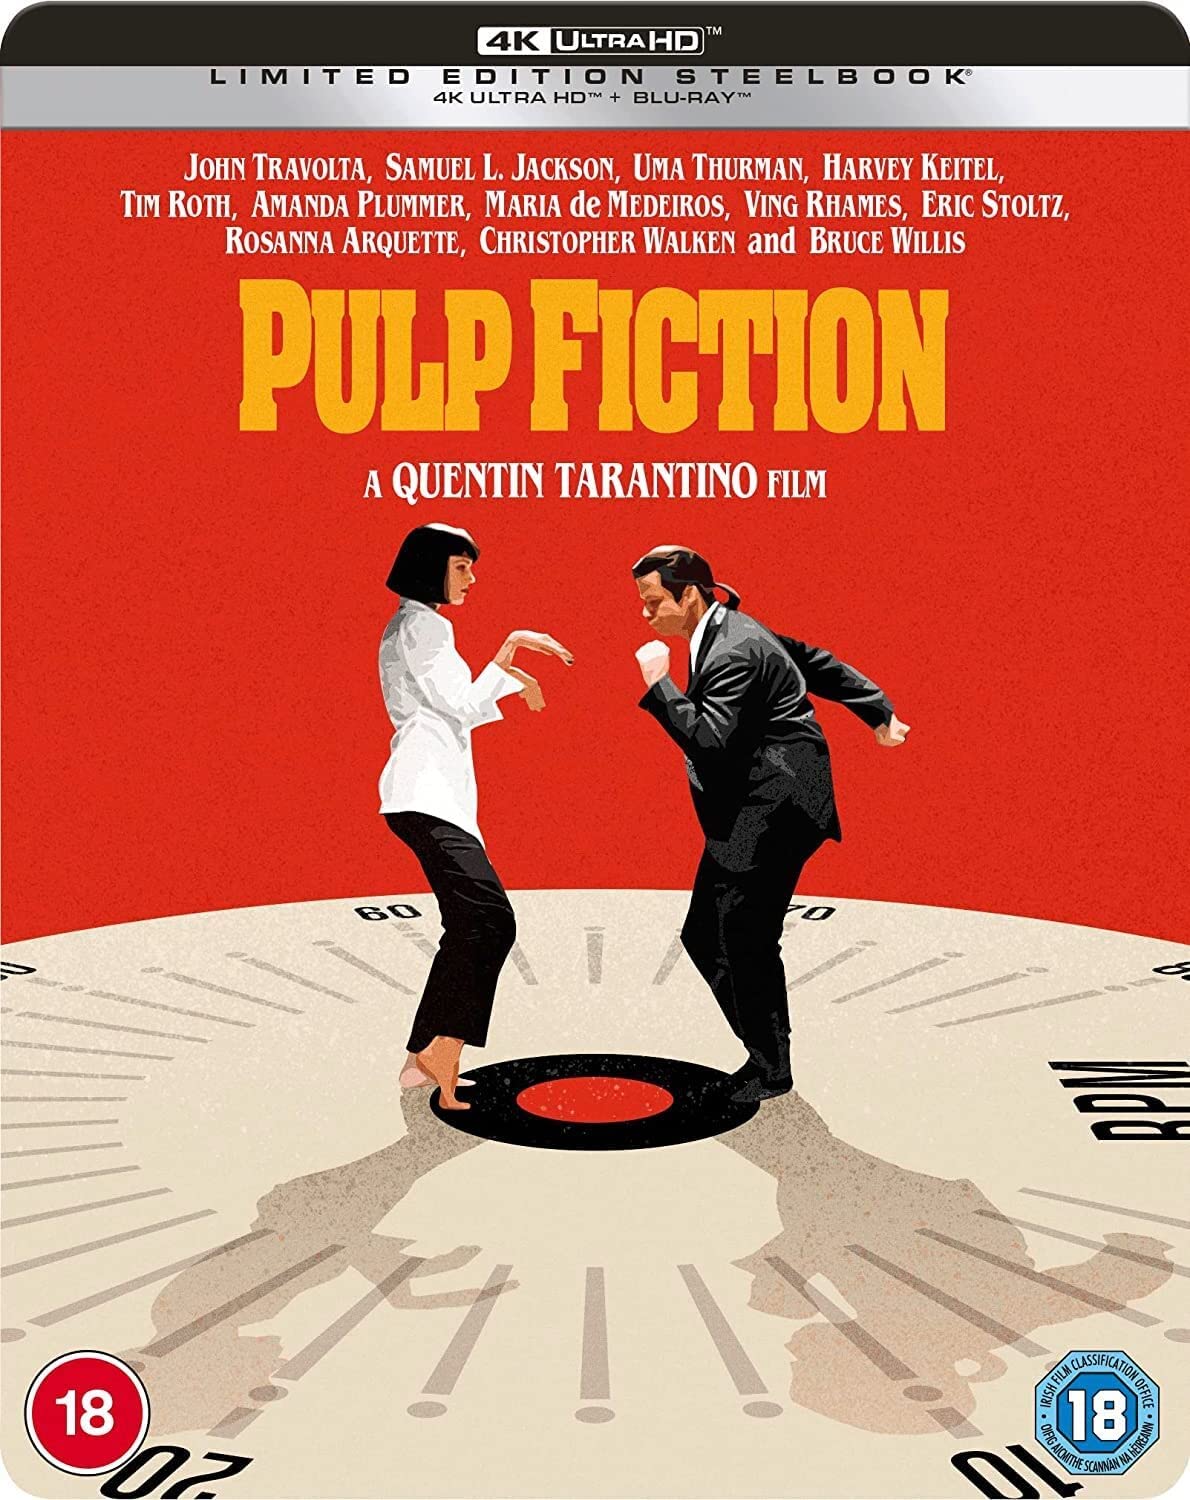 GAGNEZ "Pulp Fiction" sur un tout nouveau Steelbook 4K UHD 4